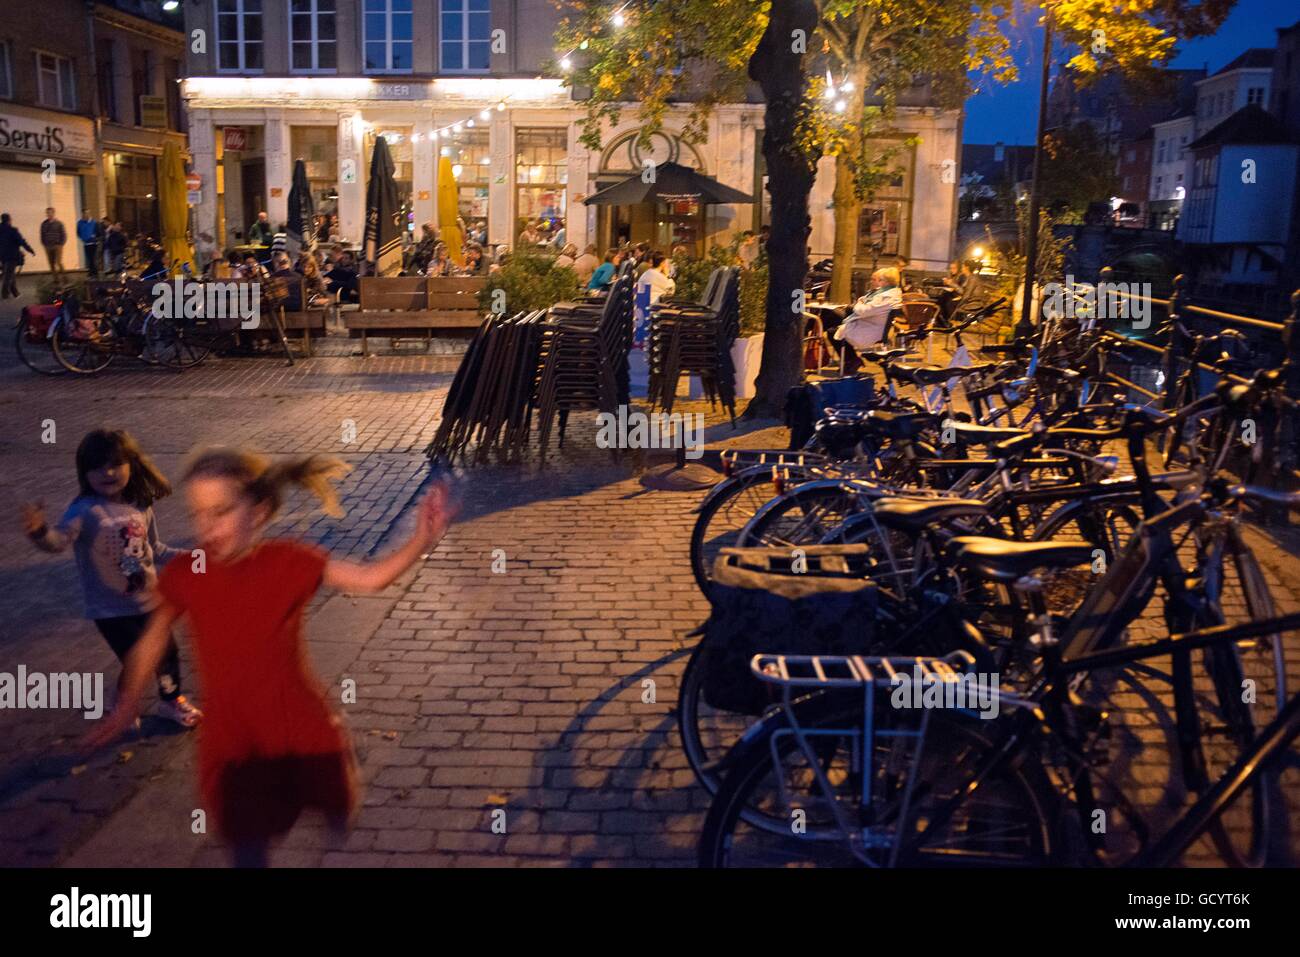 Bars and restaurant terraces Vismarkt, Mechelen (Malines) at night, Flanders, Belgium. Stock Photo